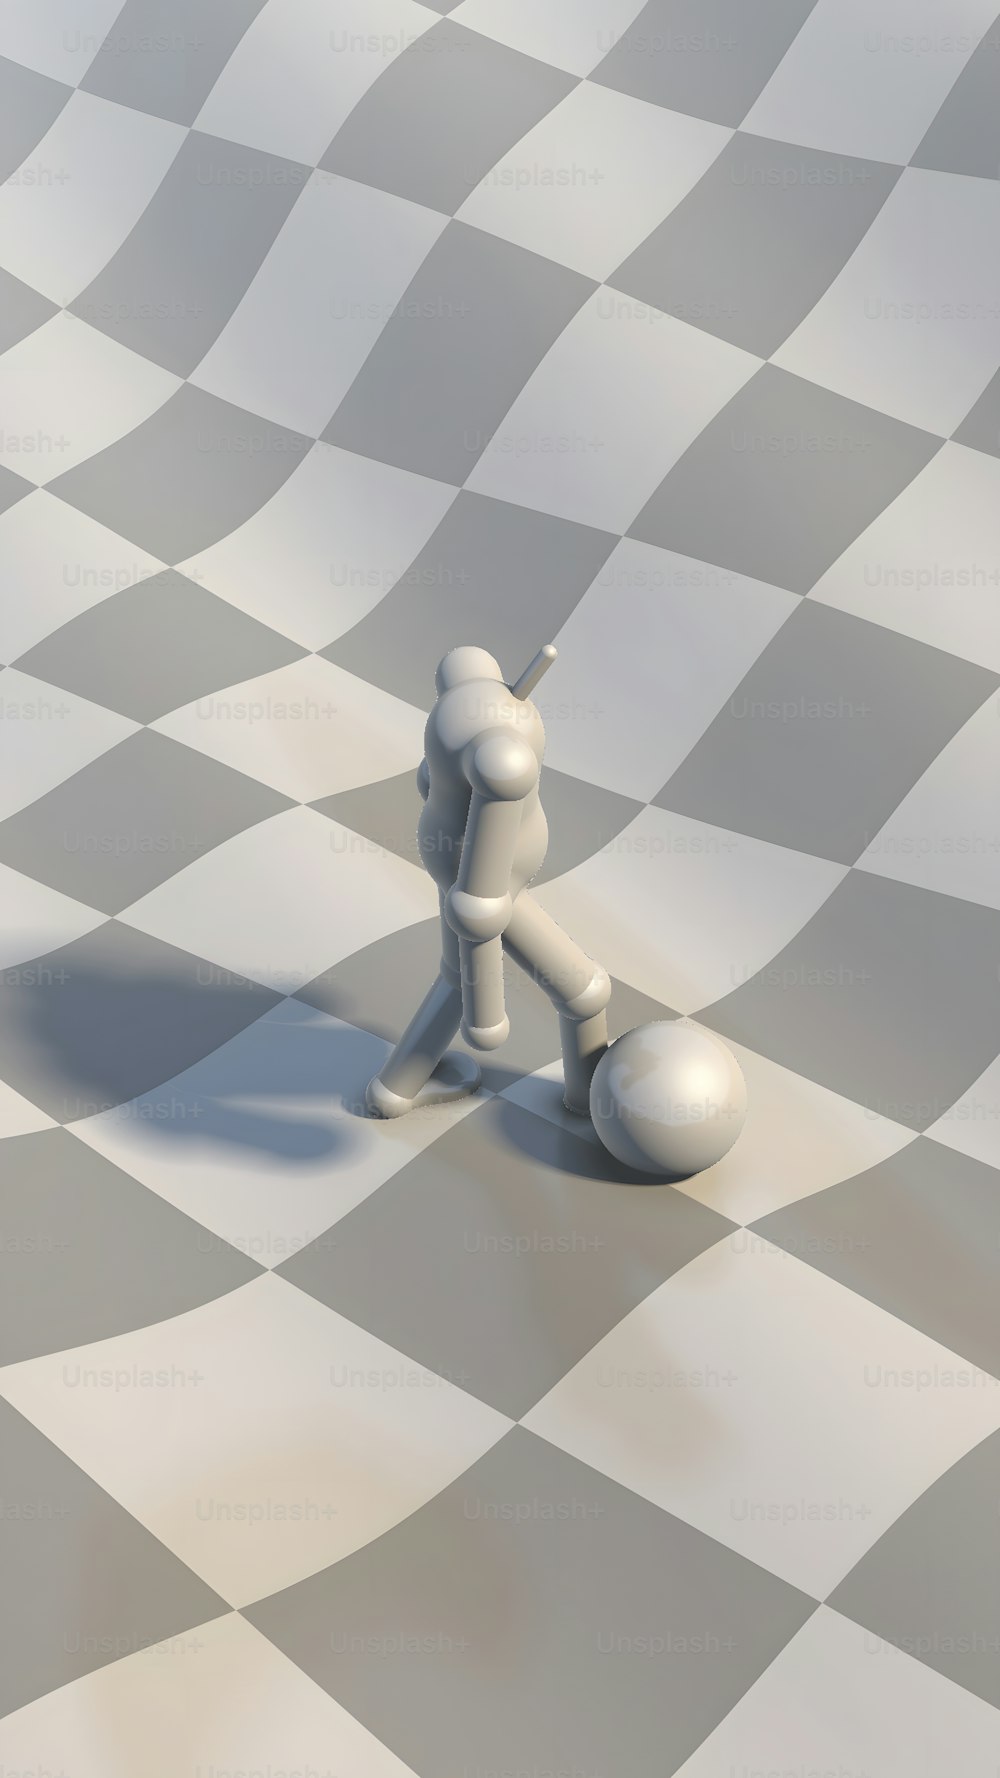 Una persona parada encima de un tablero de ajedrez